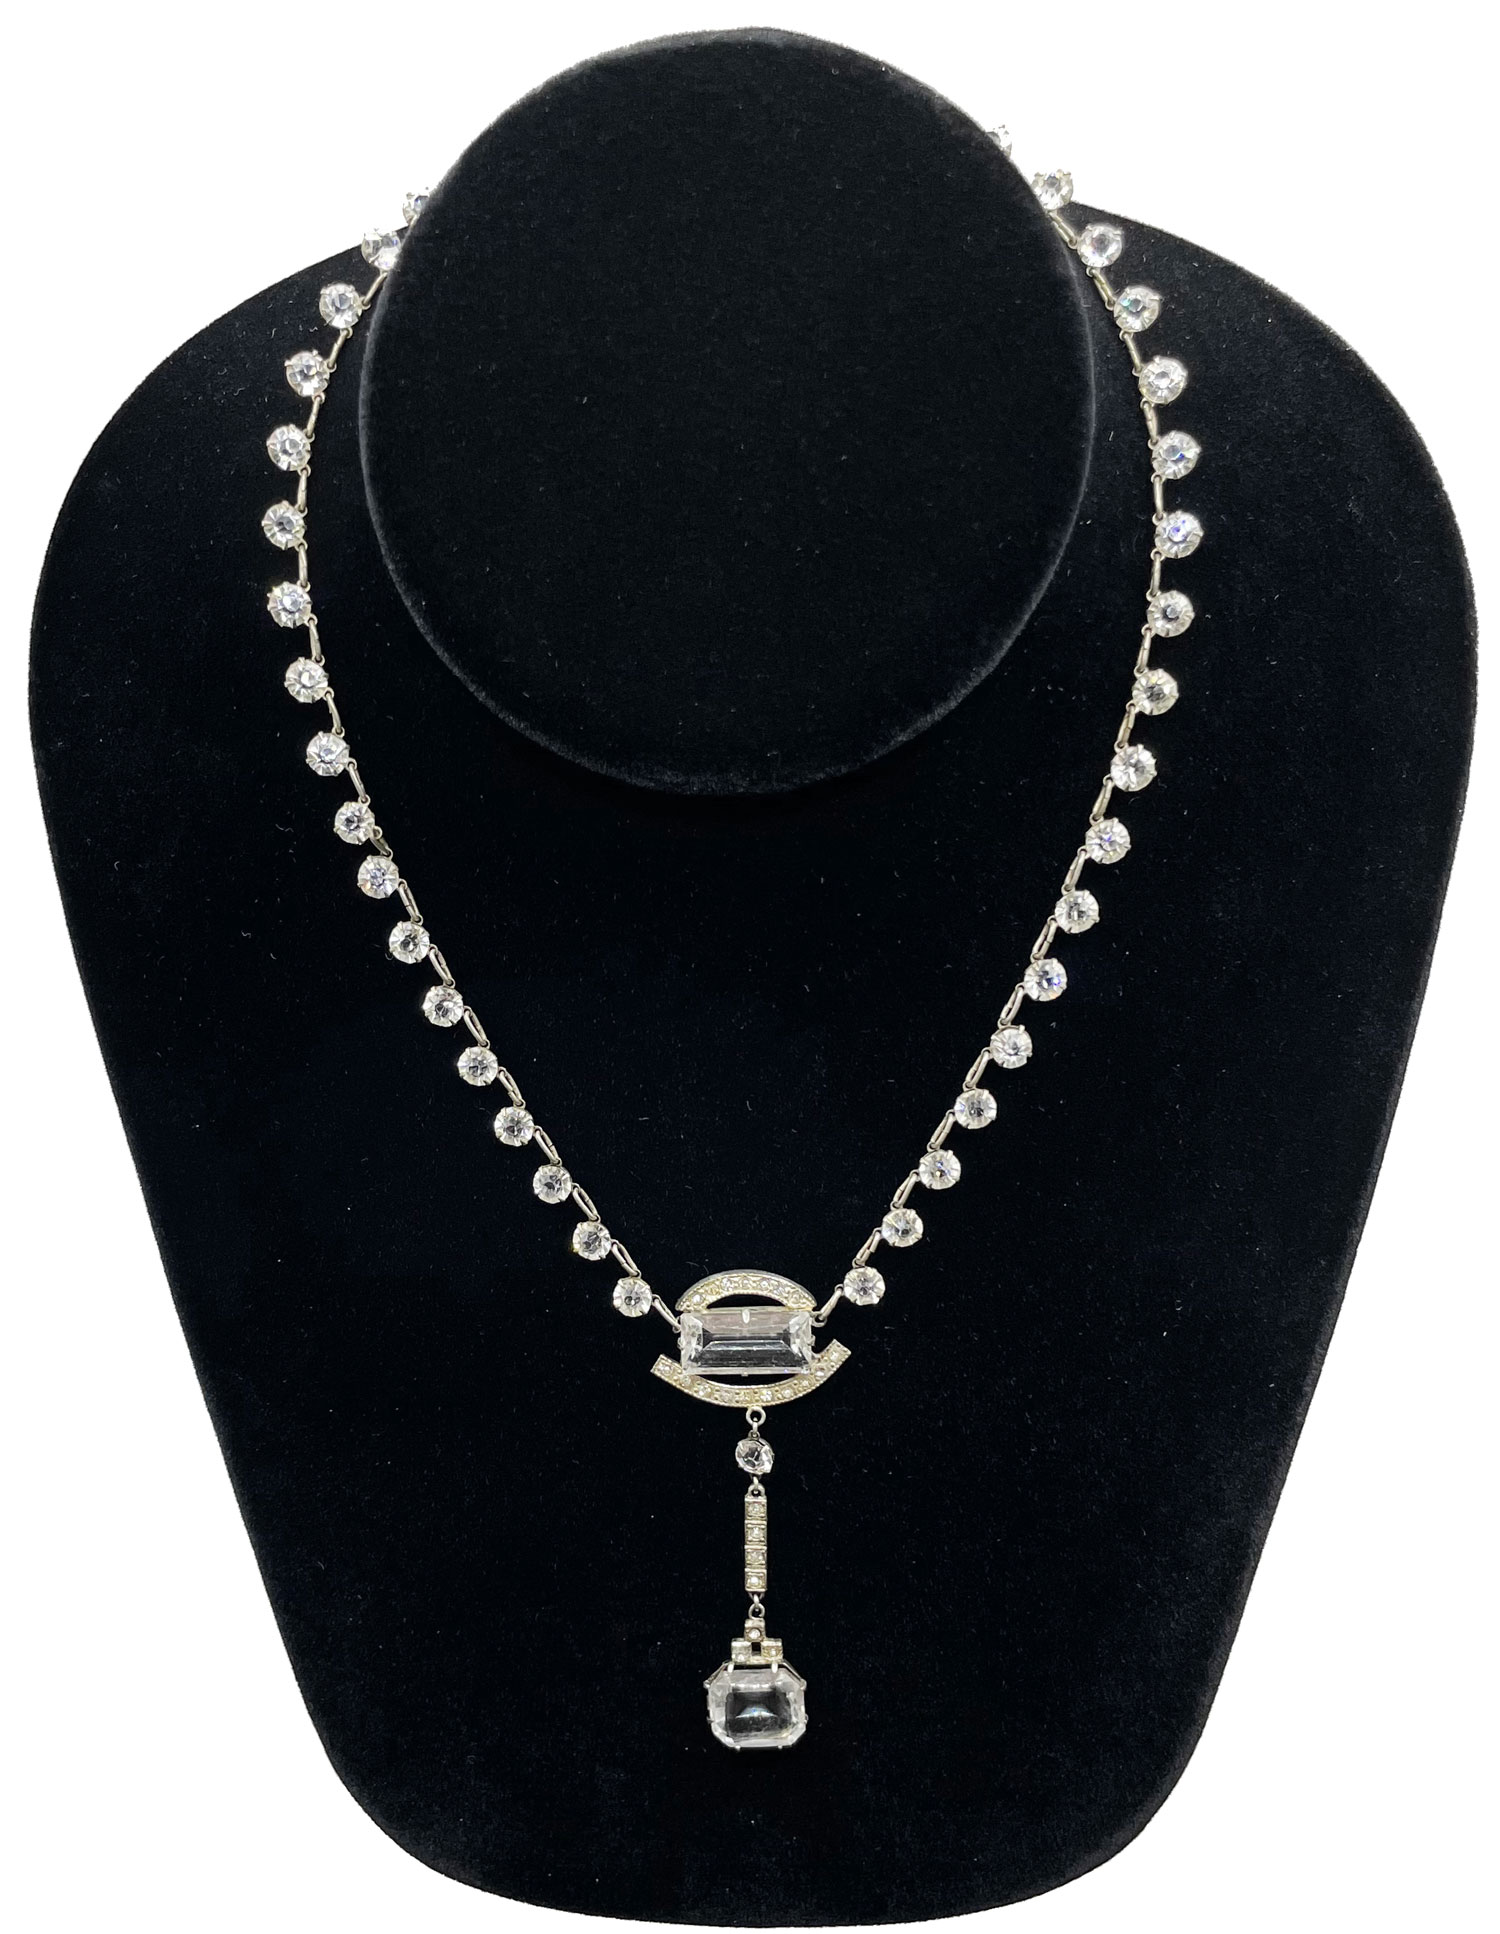 1920s Art Deco pendant necklace